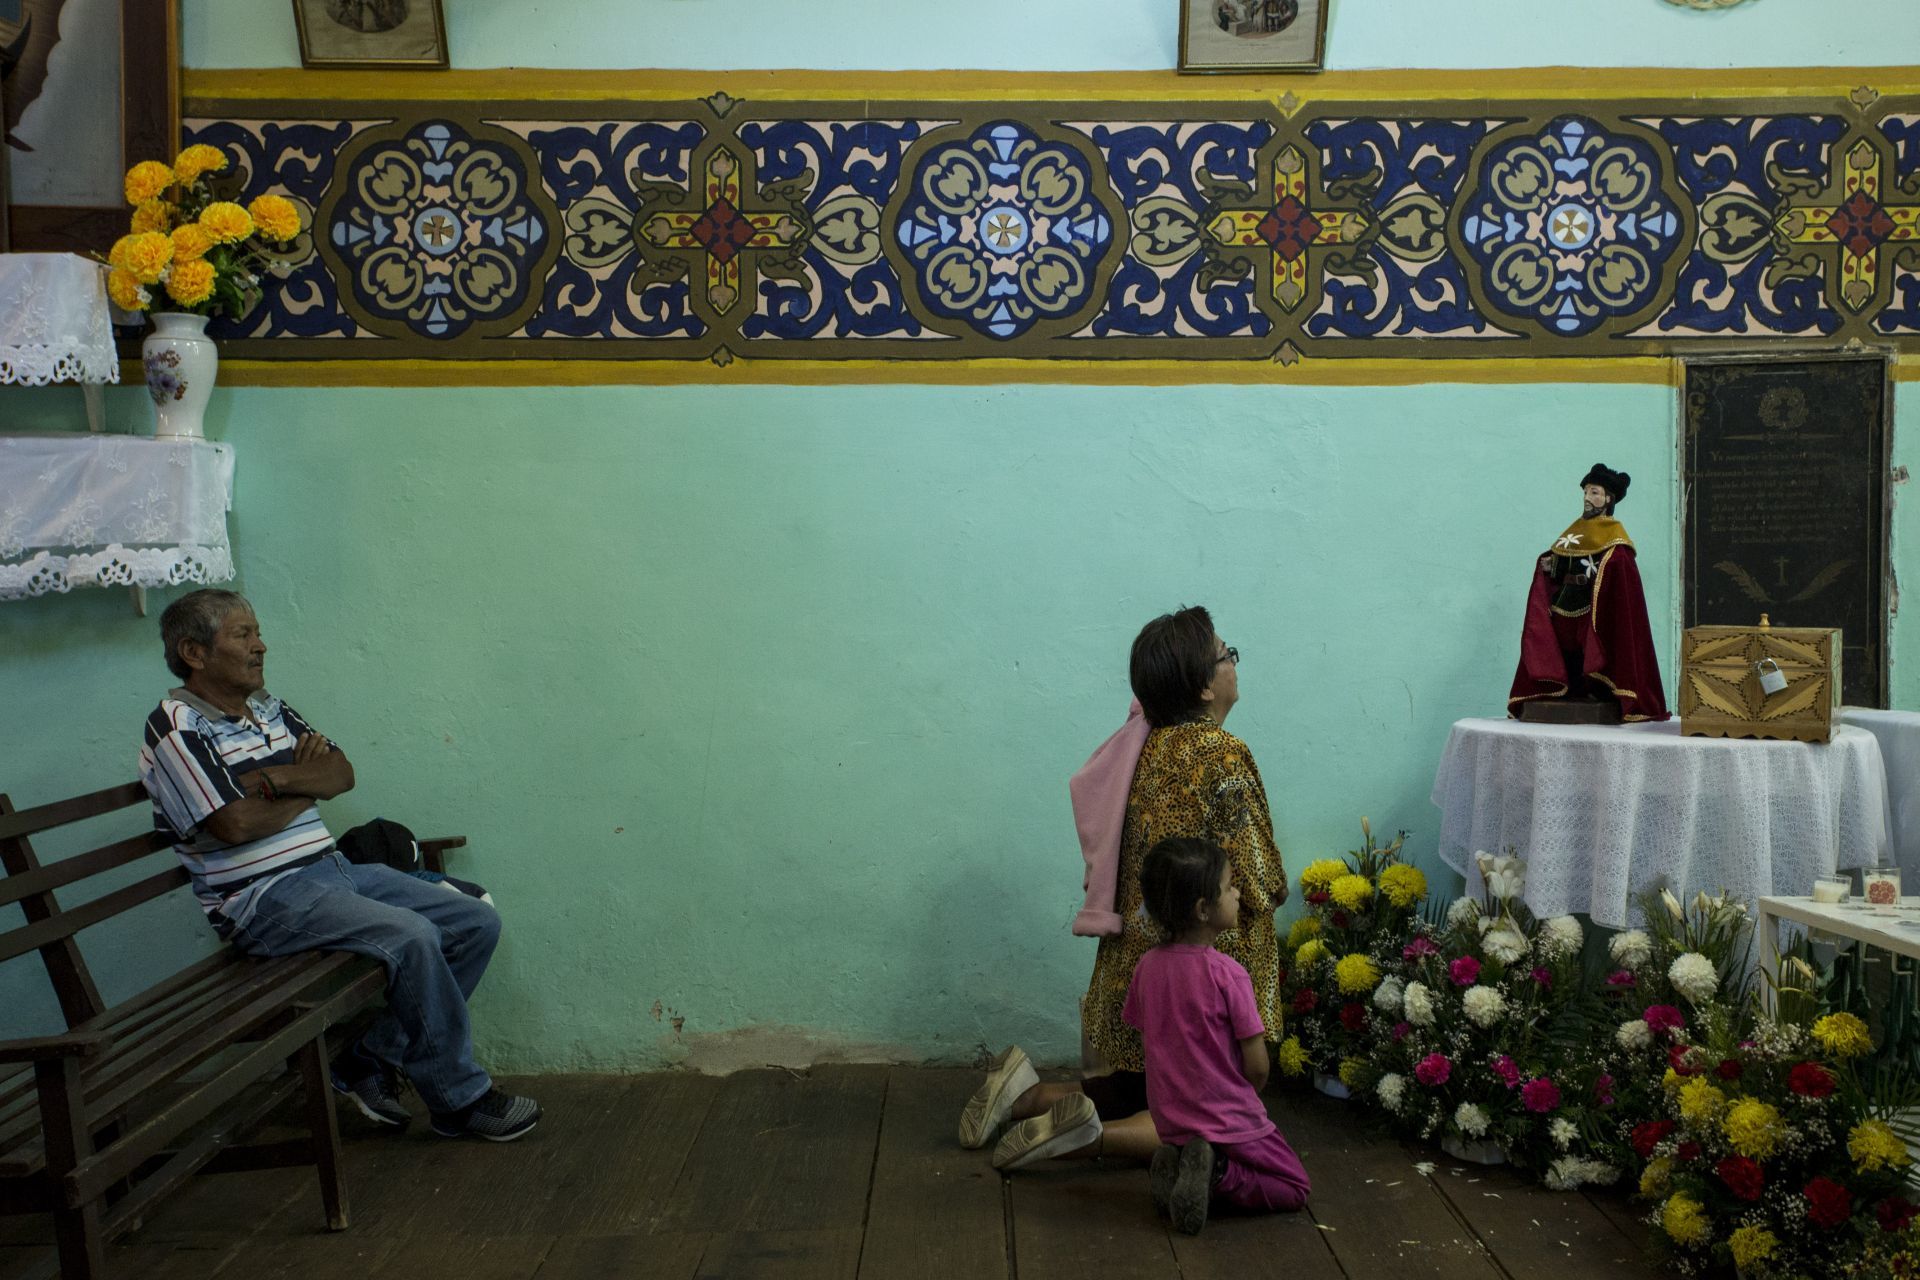 Obispo de Zacatecas fue detenido por civiles armados e instó a tener cuidado: “No quiero mártires”